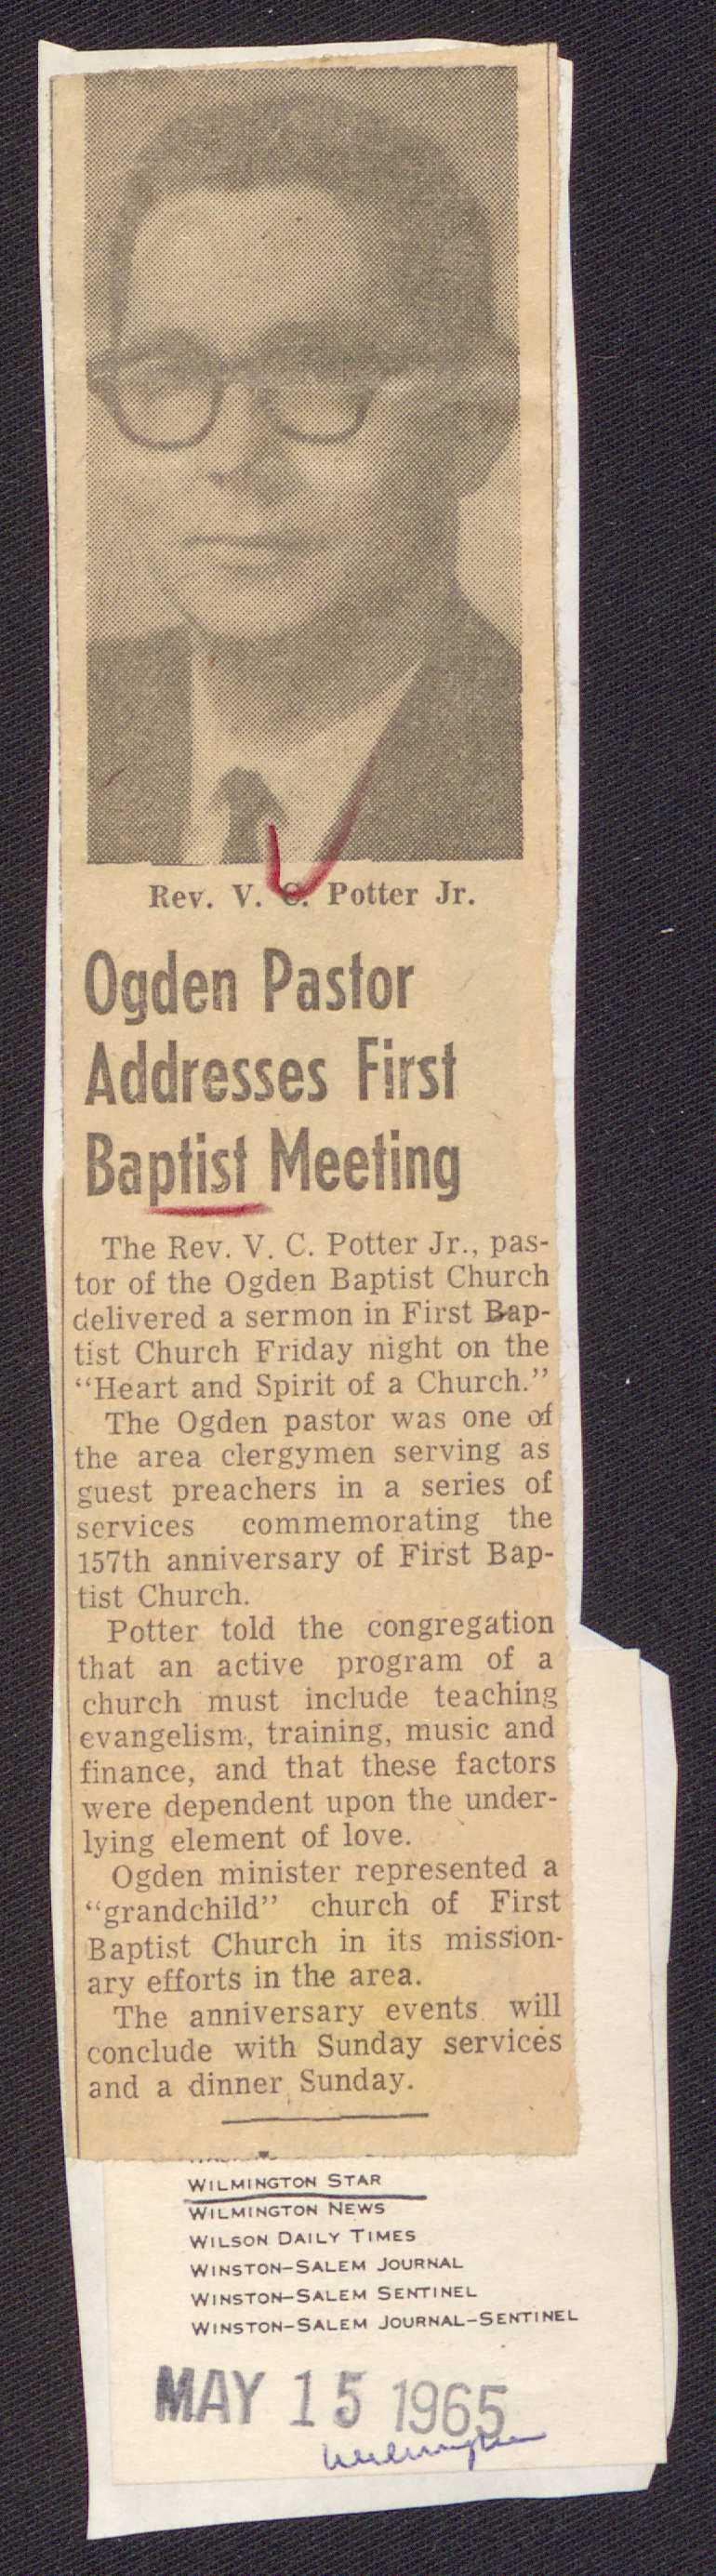 1 Ogden Pastor Addresses First Ba tist Meeting The Rev. V. C. Potter Jr.